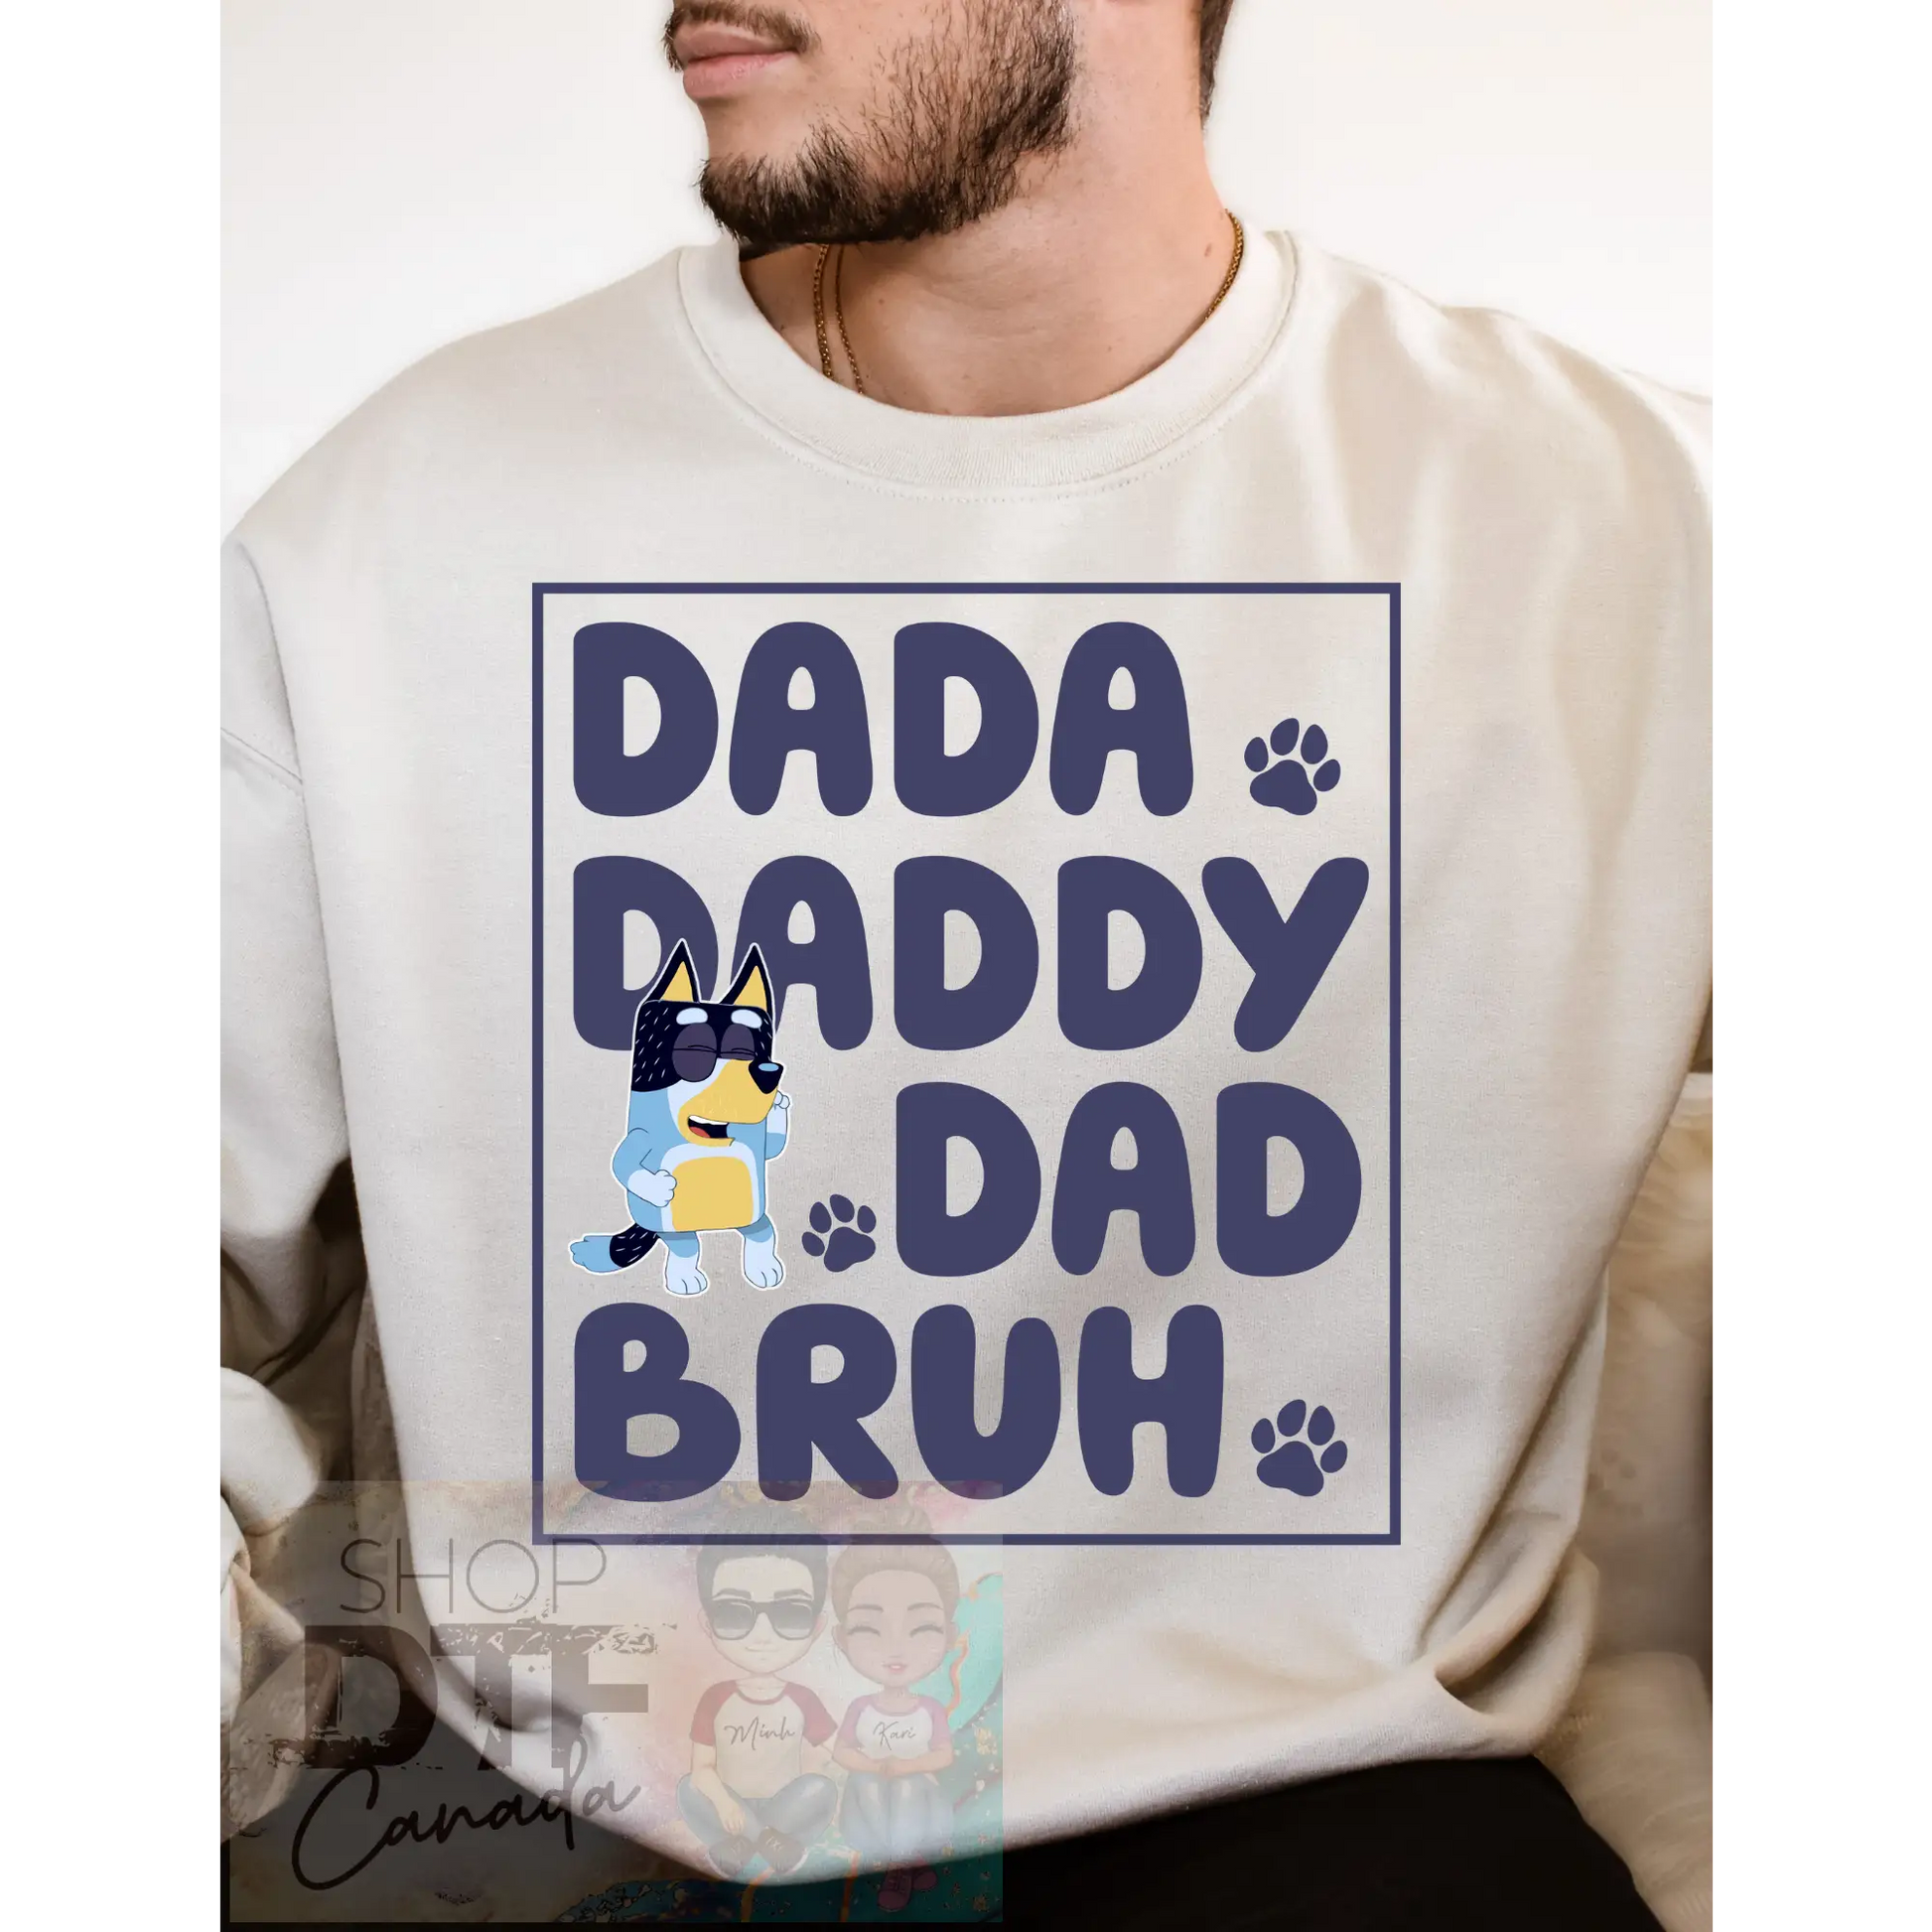 Dad - Bluey - Dada Daddy Dad Bruh - Shirts & Tops